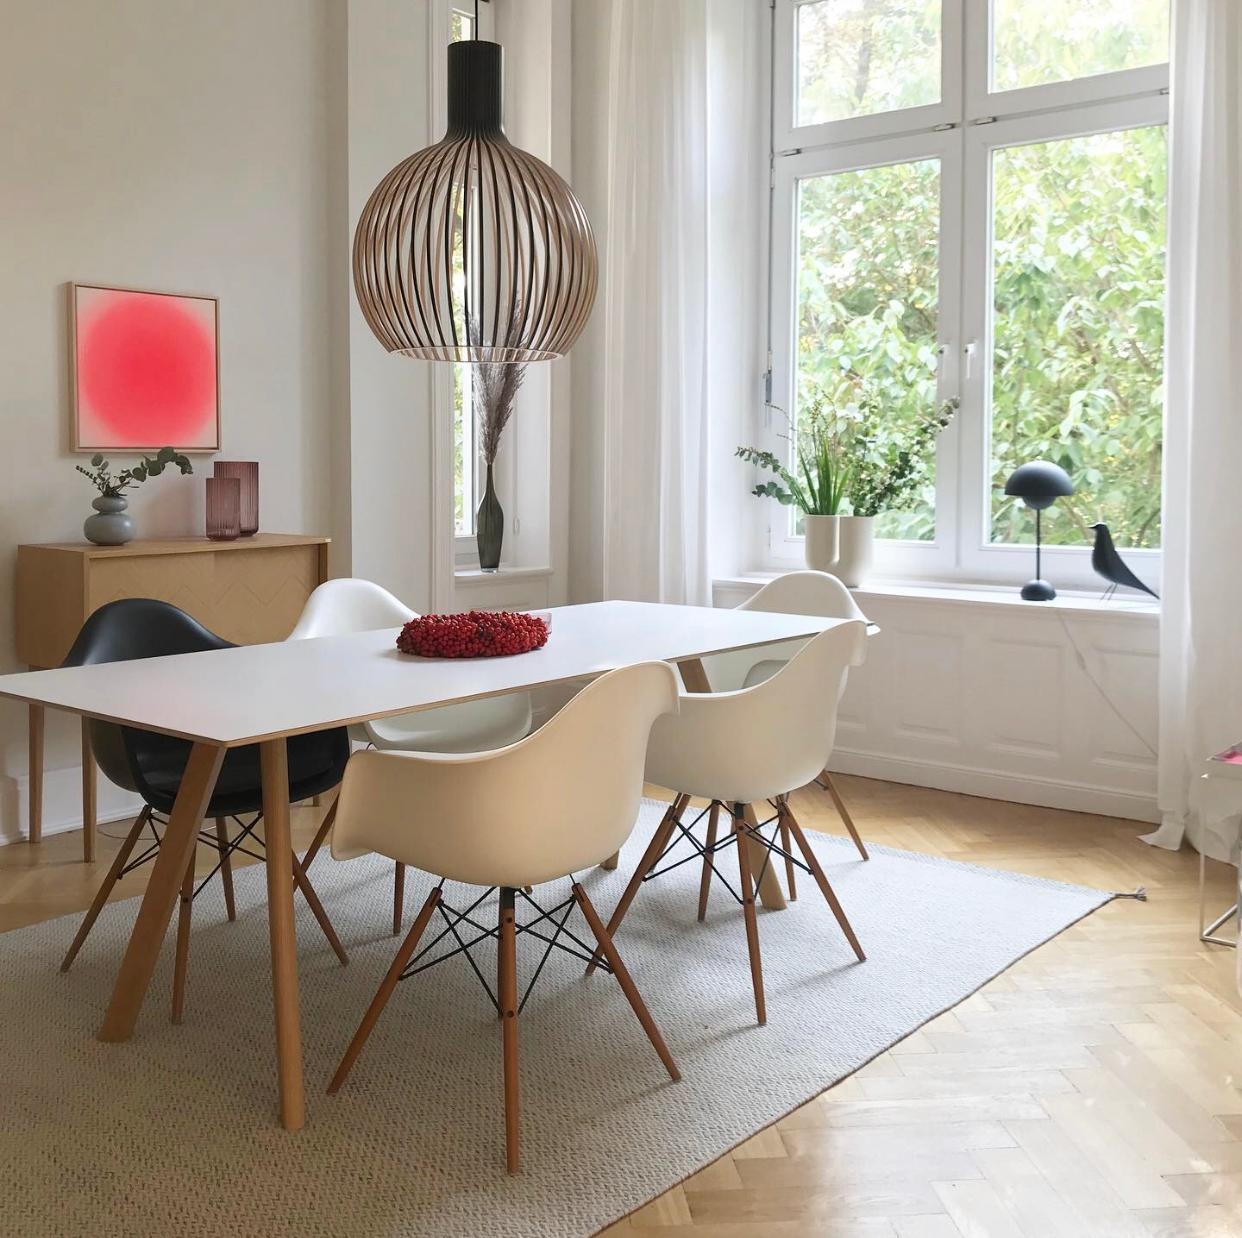 #livingroom #esszimmer #wohnen #living skandistyle #colorful #couchliebt #couchstyle #interior